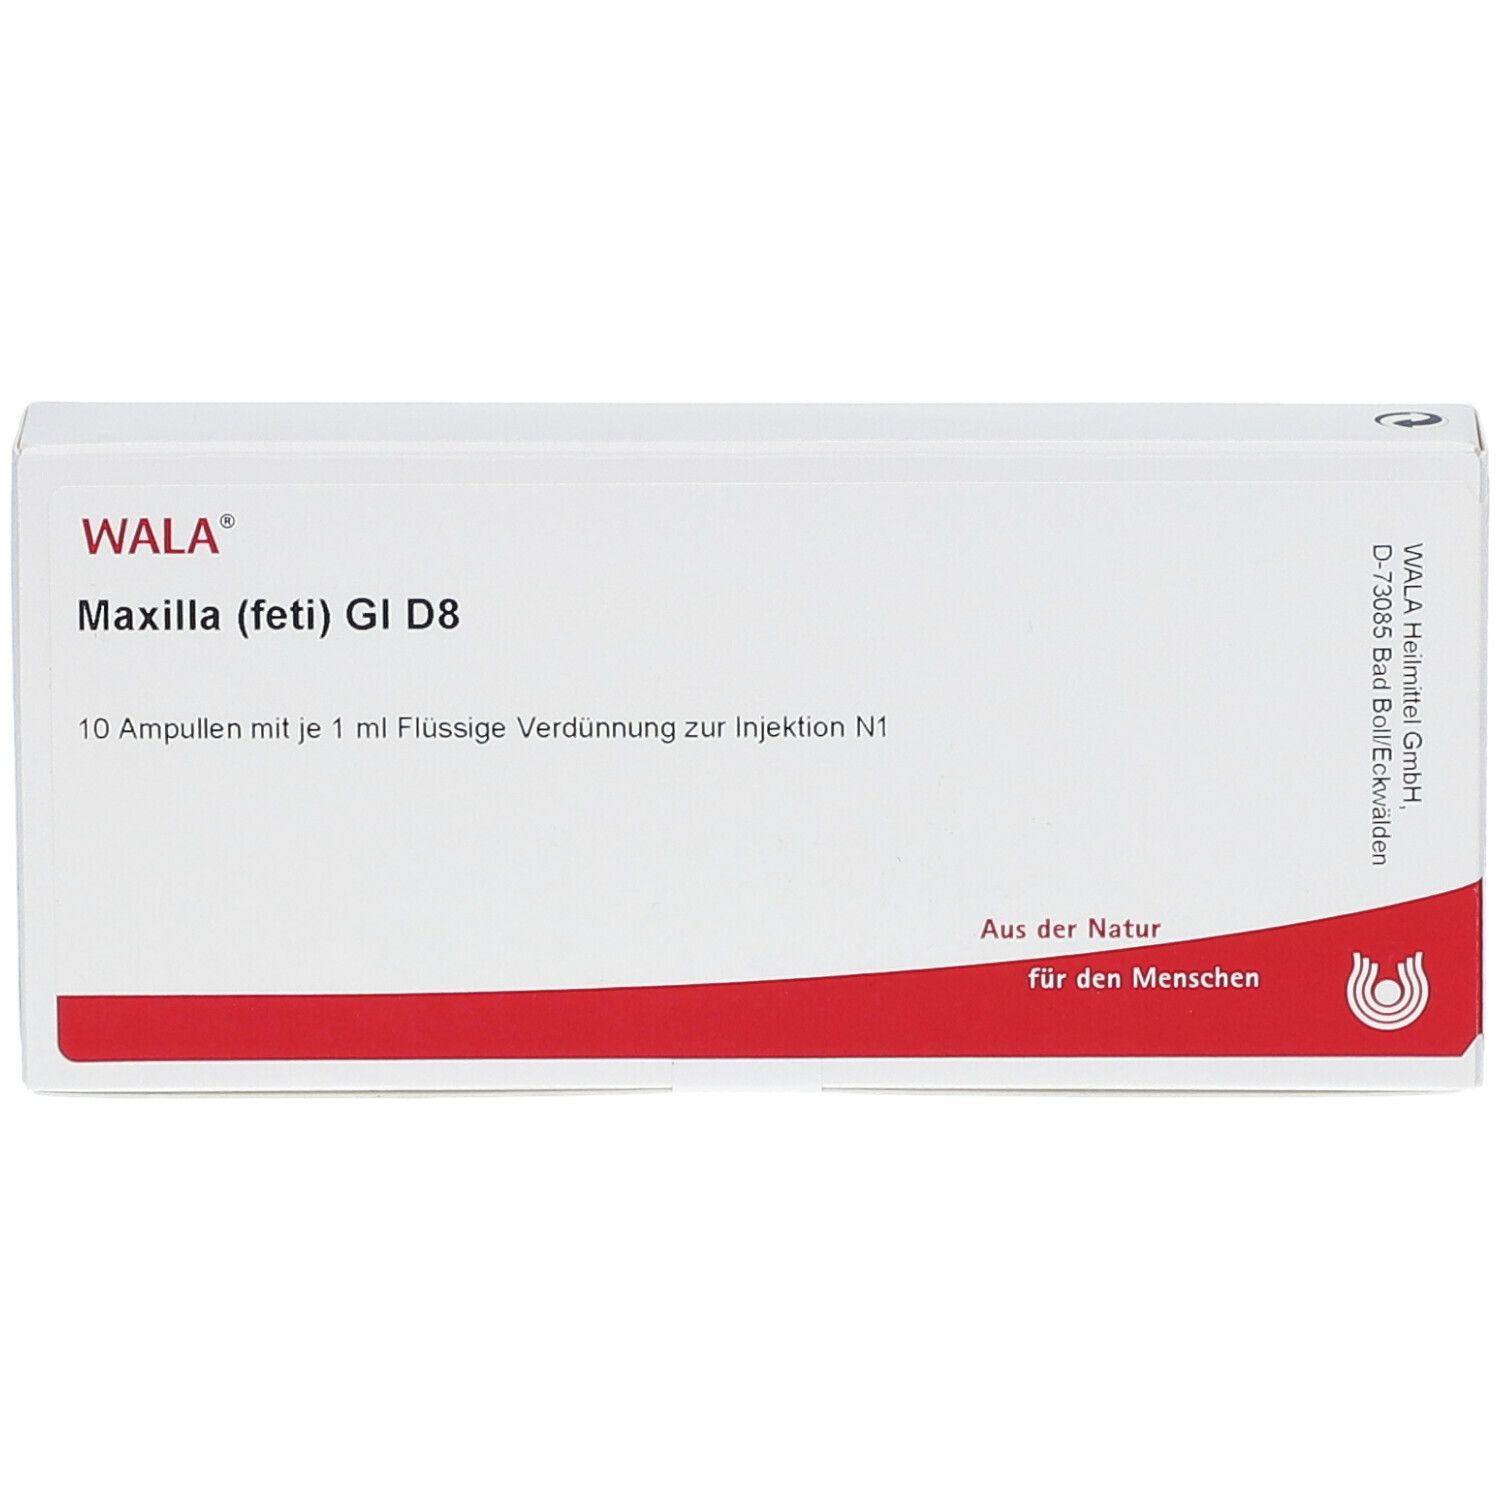 WALA® Maxilla feti Gl D 8